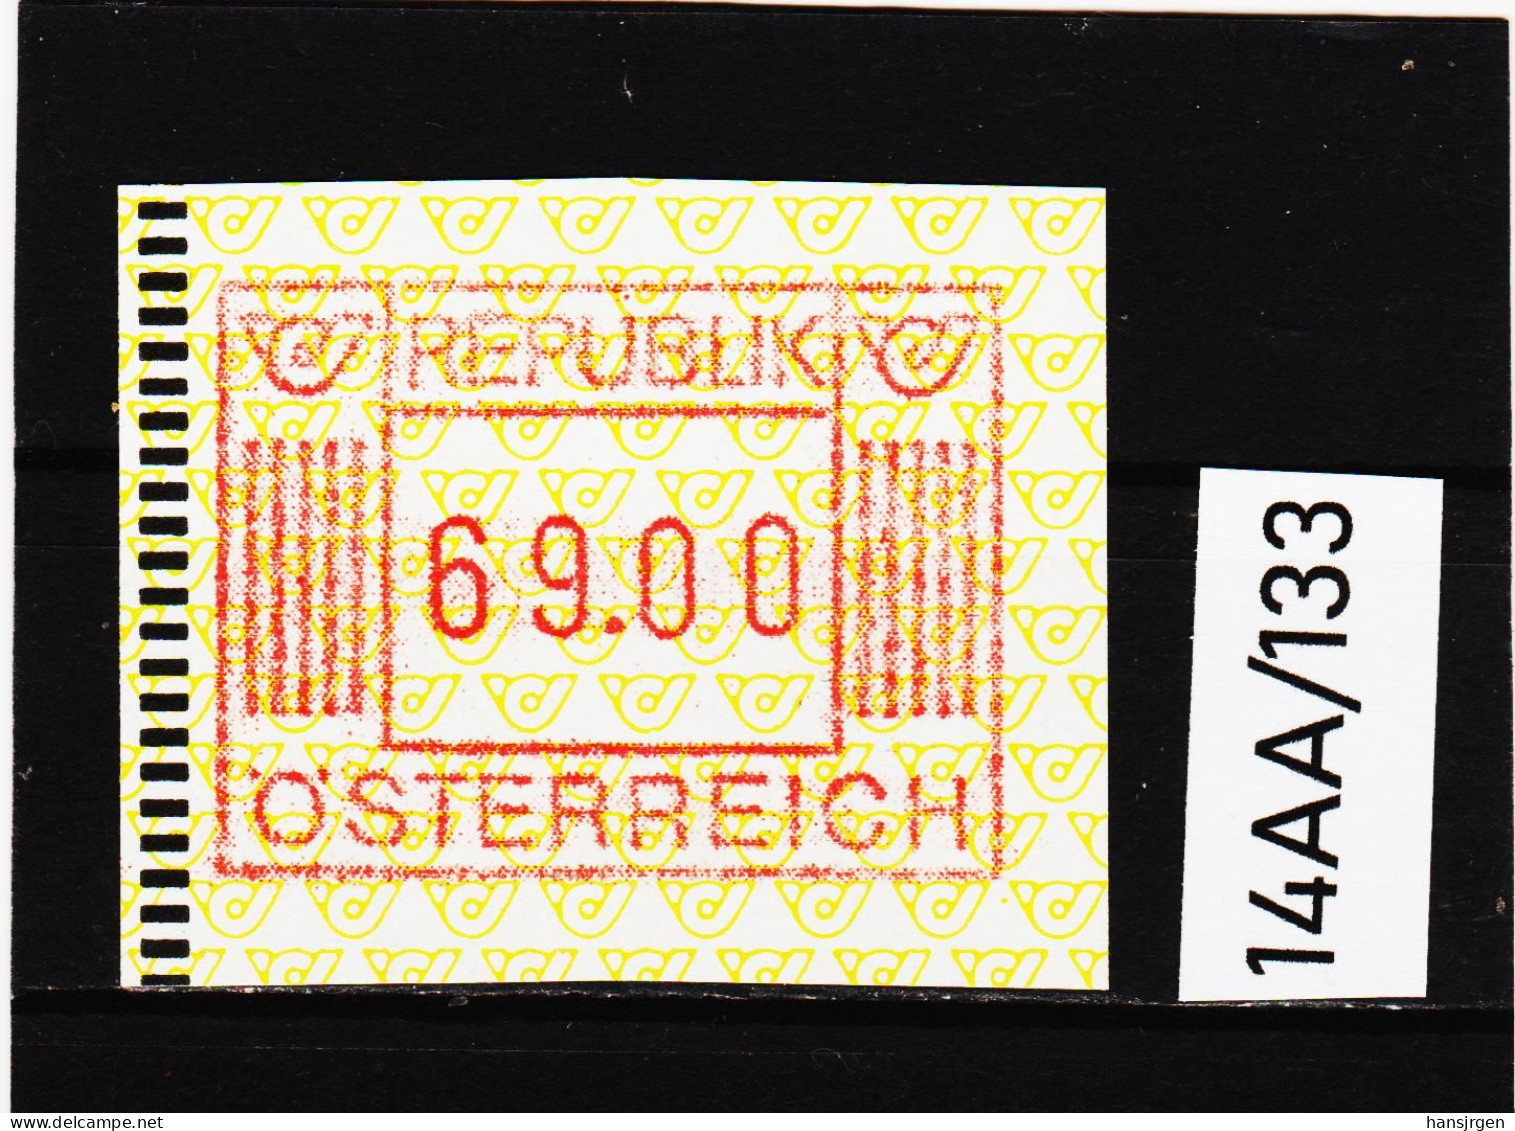 14AA/133  ÖSTERREICH 1983 AUTOMATENMARKEN  A N K  1. AUSGABE  69,00 SCHILLING   ** Postfrisch - Automatenmarken [ATM]